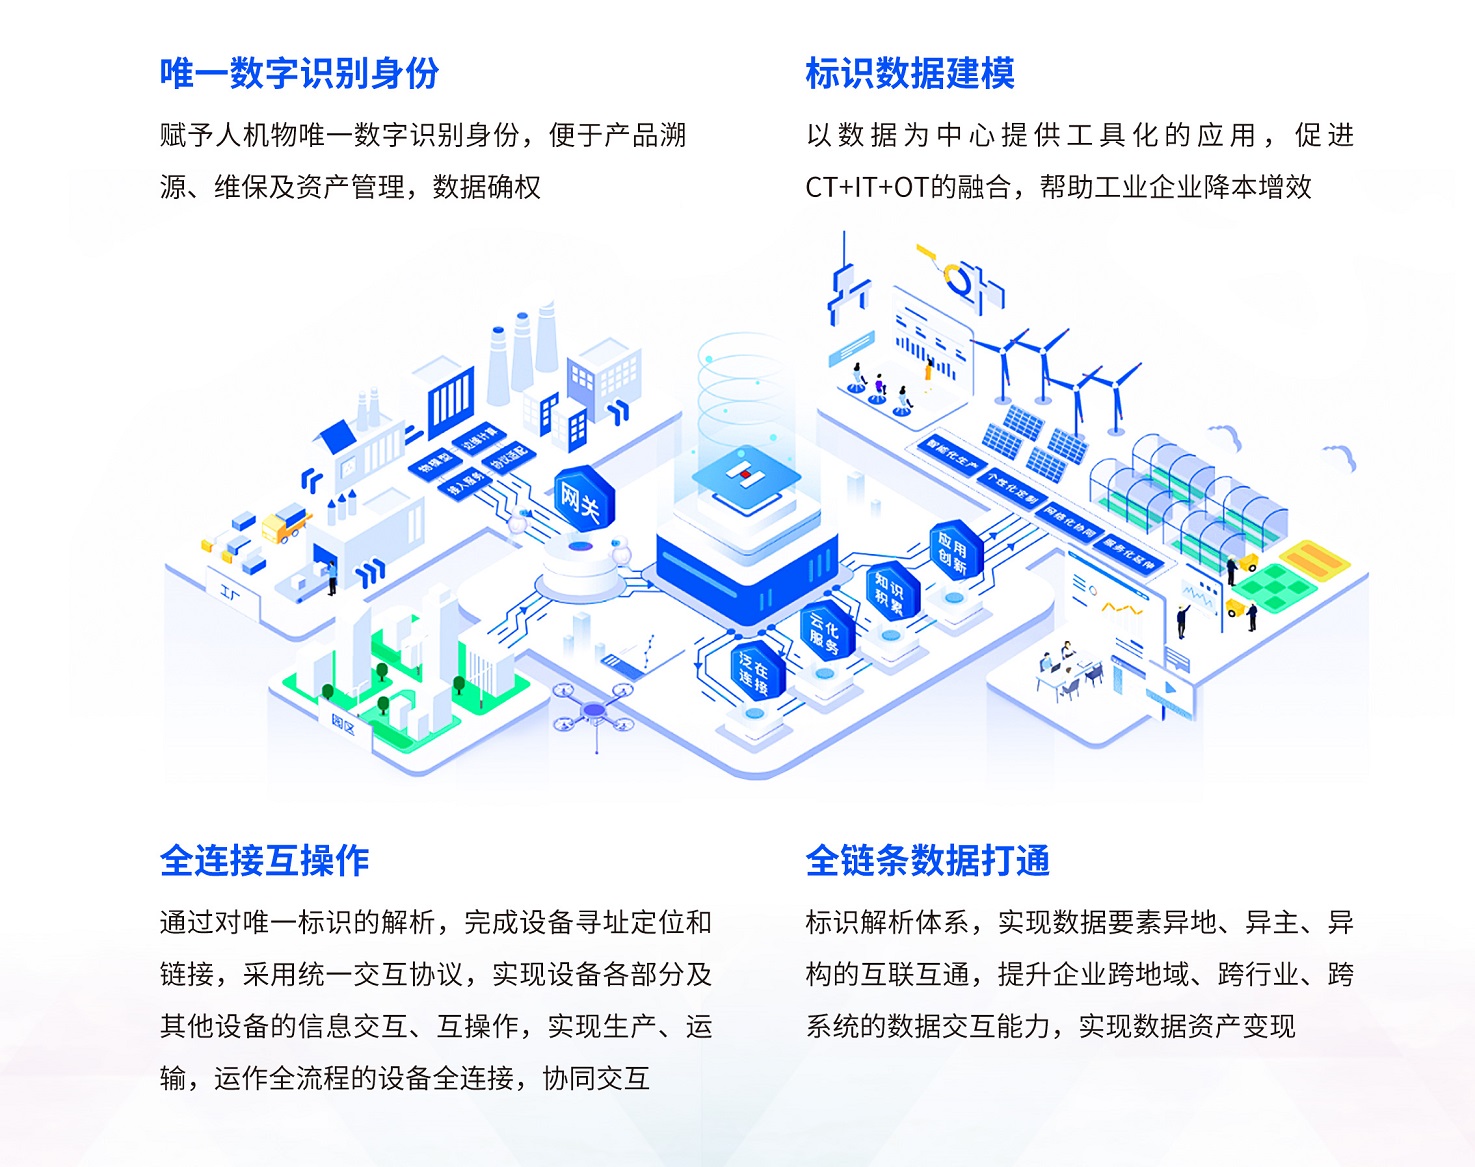 环球软件作为潍坊市工业互联网协会发起单位参加揭牌仪式